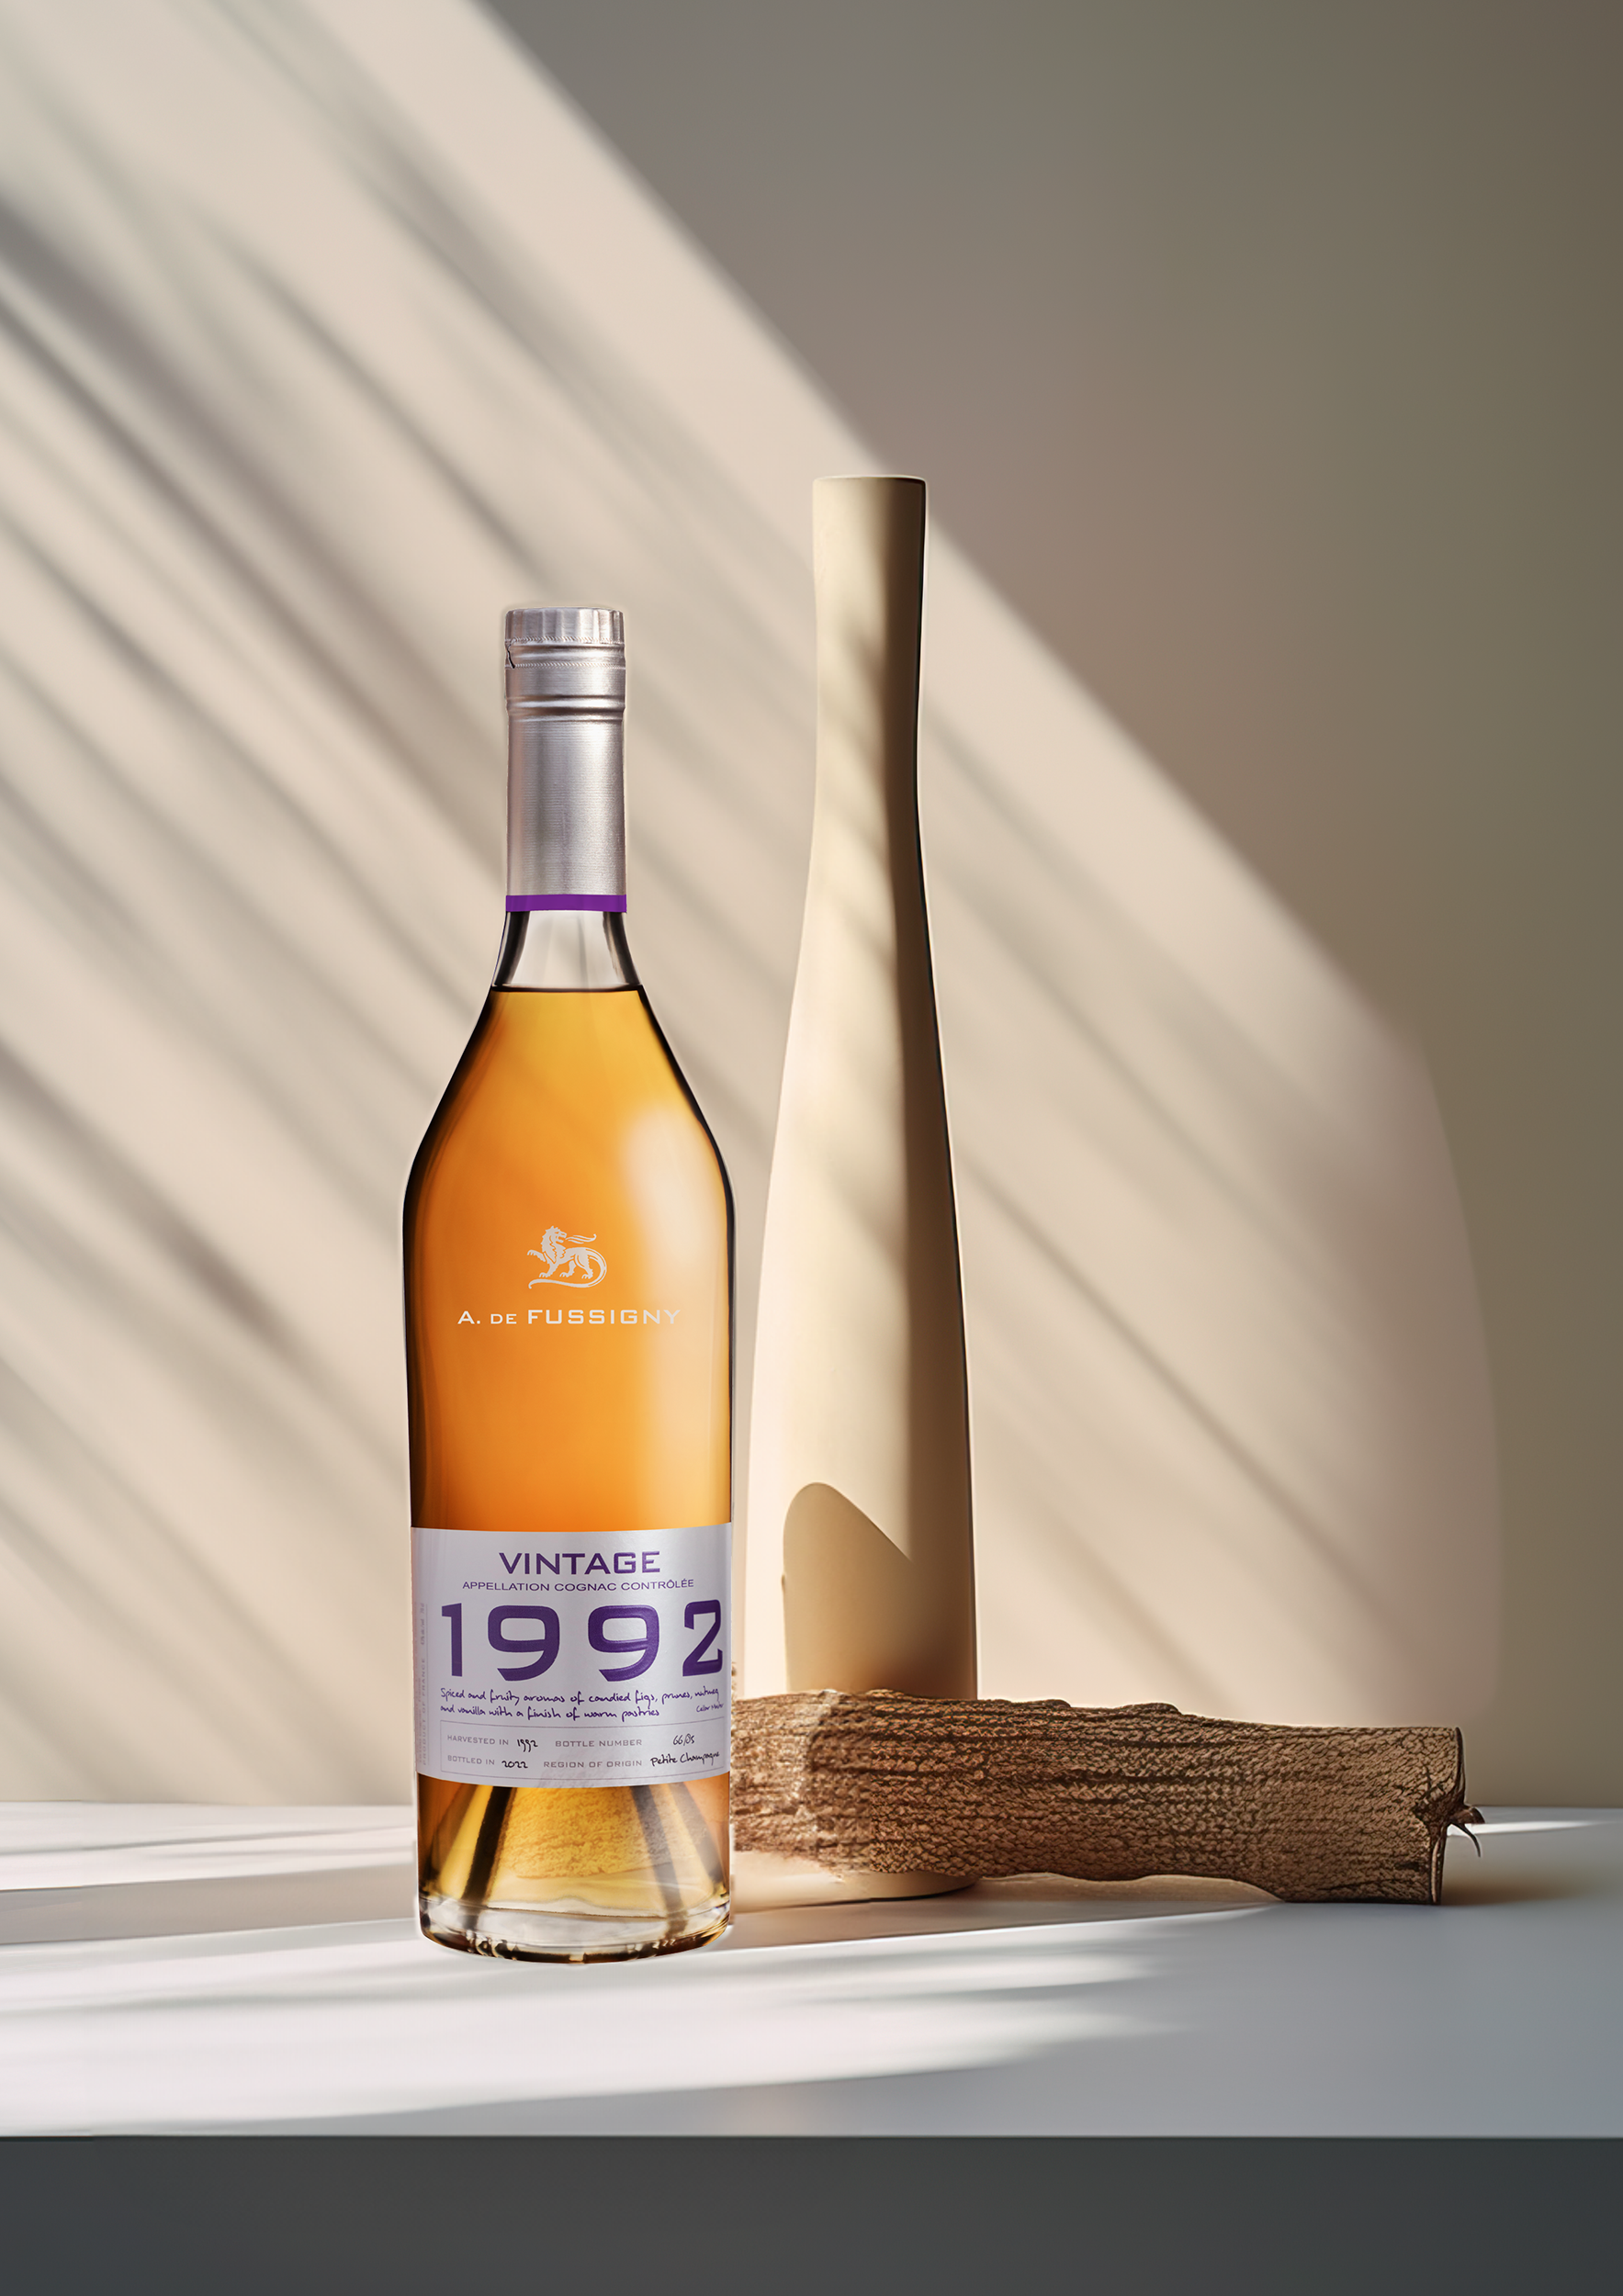 Plongez au cœur des vignobles de Petite Champagne avec le Millésime 1992. Ce cognac capture l'essence même de la subtilité, déployant des notes florales et fruitées qui évoquent la douceur des printemps passés.